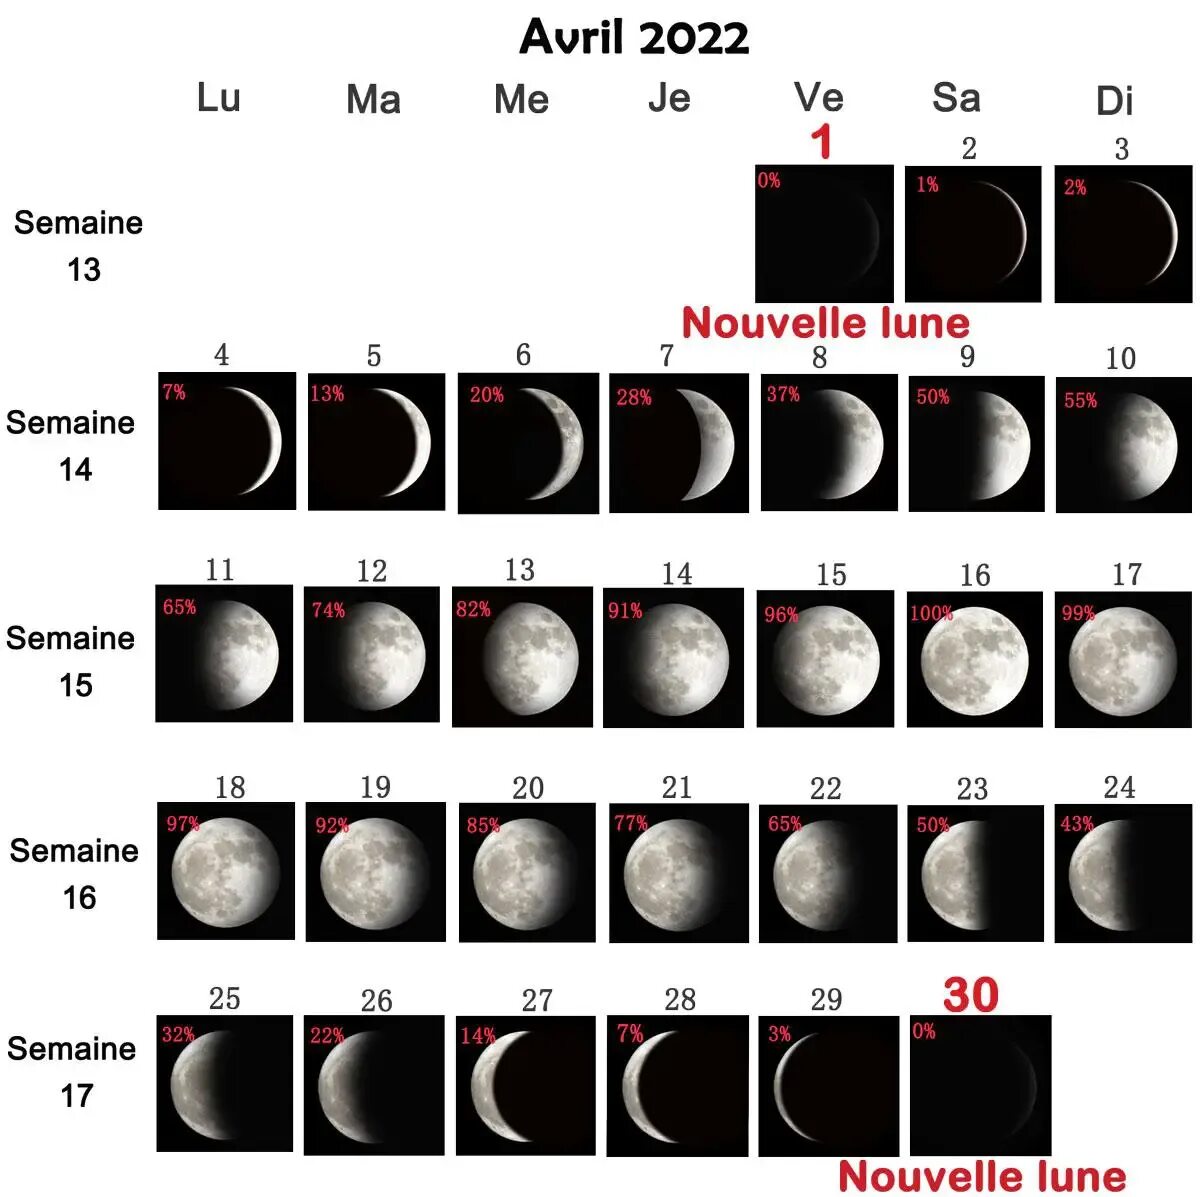 Новая луна в апреле 2024г. Фазы Луны. Стадии Луны. Фазы Луны 2022. Календарь фаз Луны на 2022 год по месяцам.